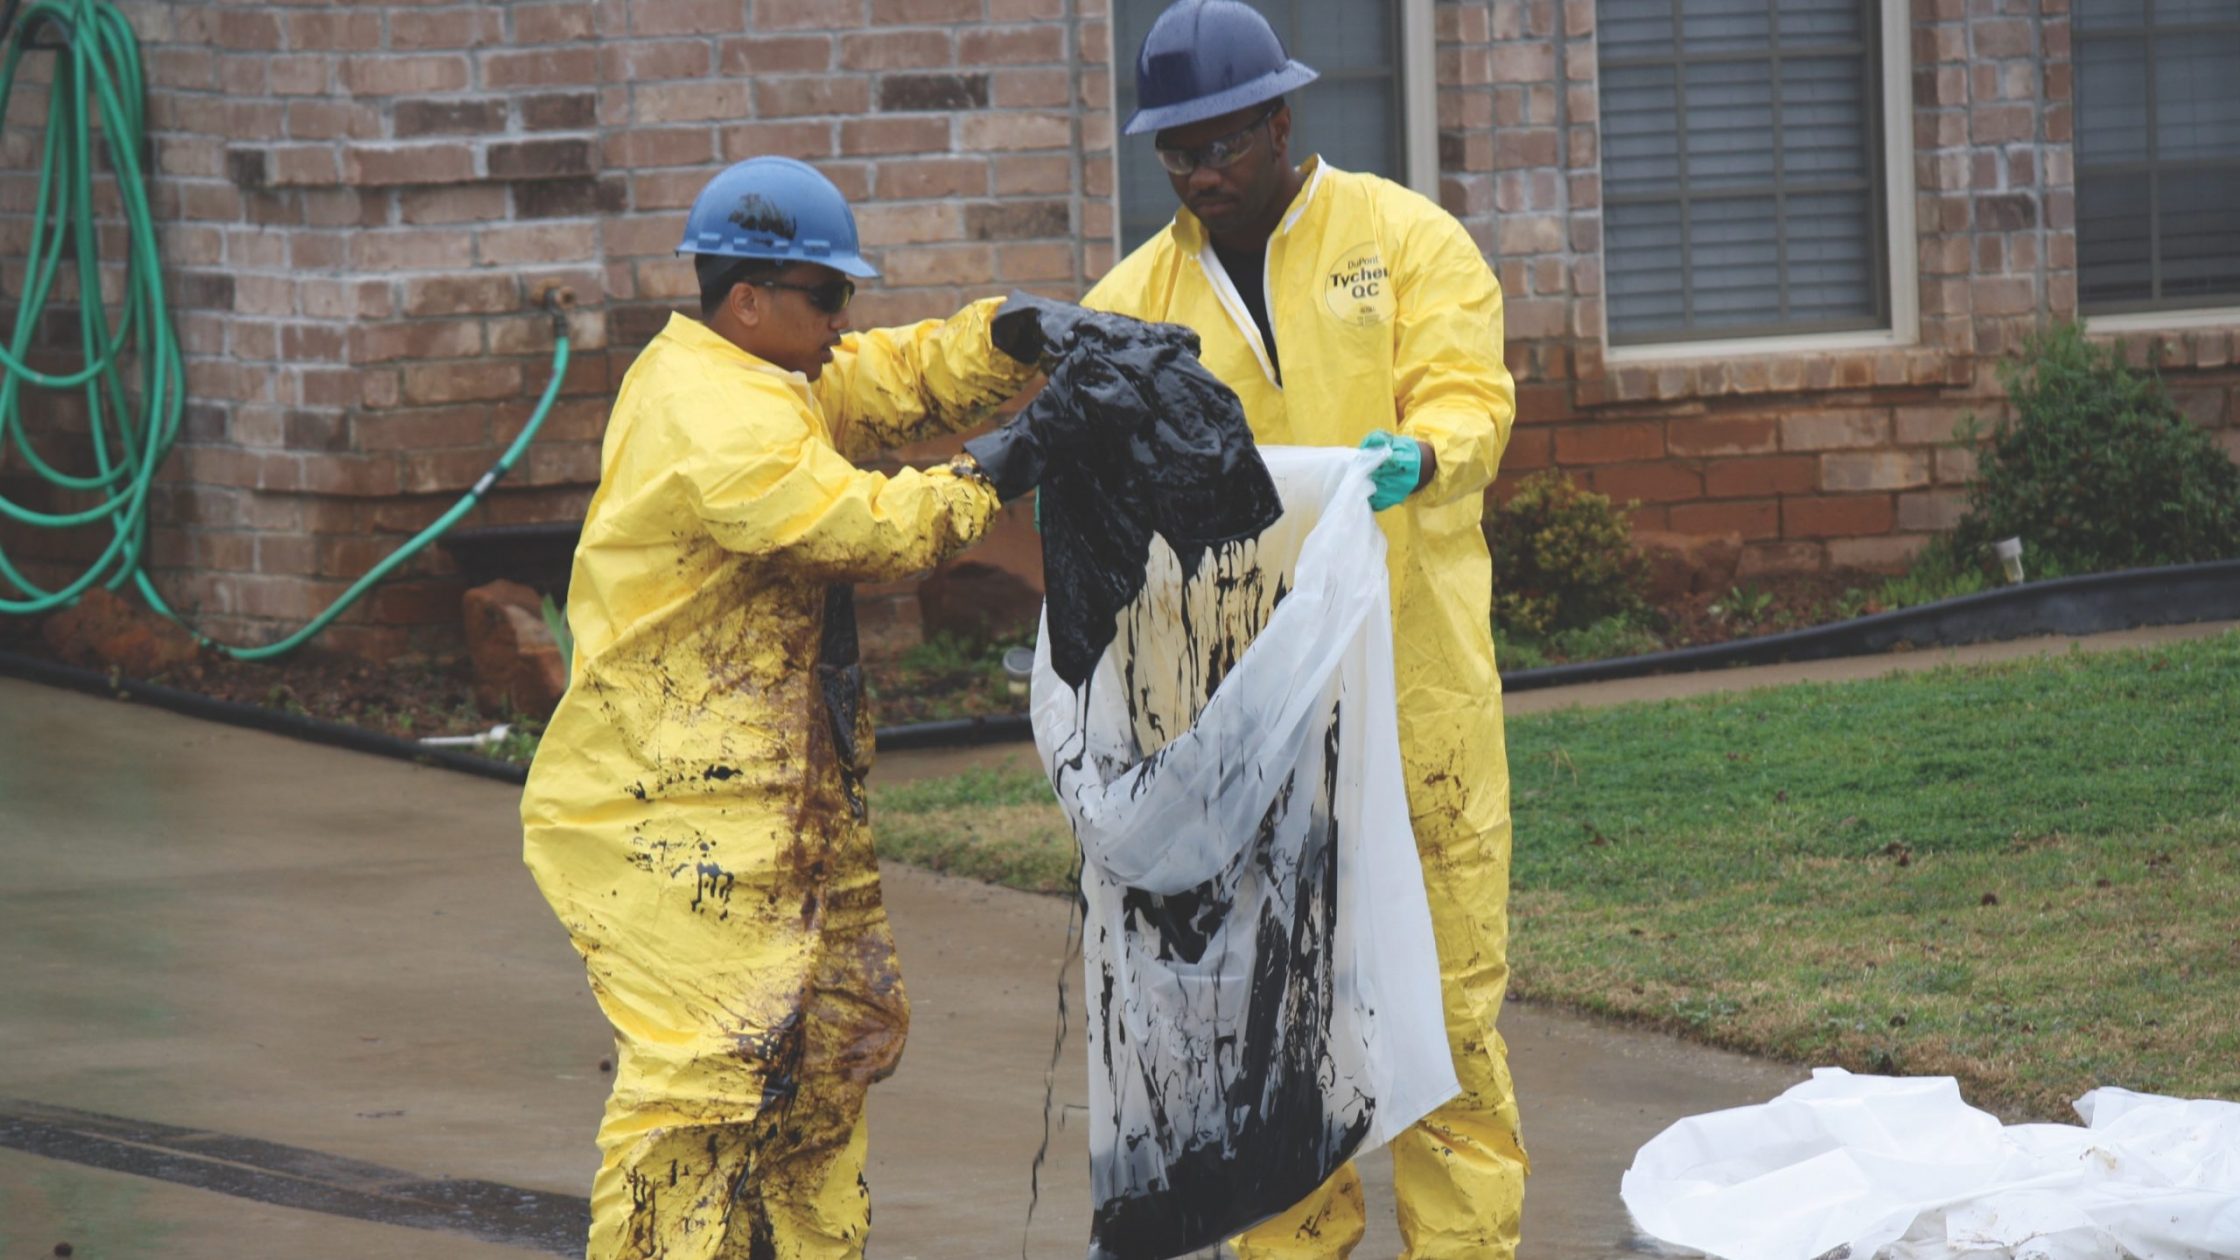 Men in hazmat suits put oil-soaked material in bags